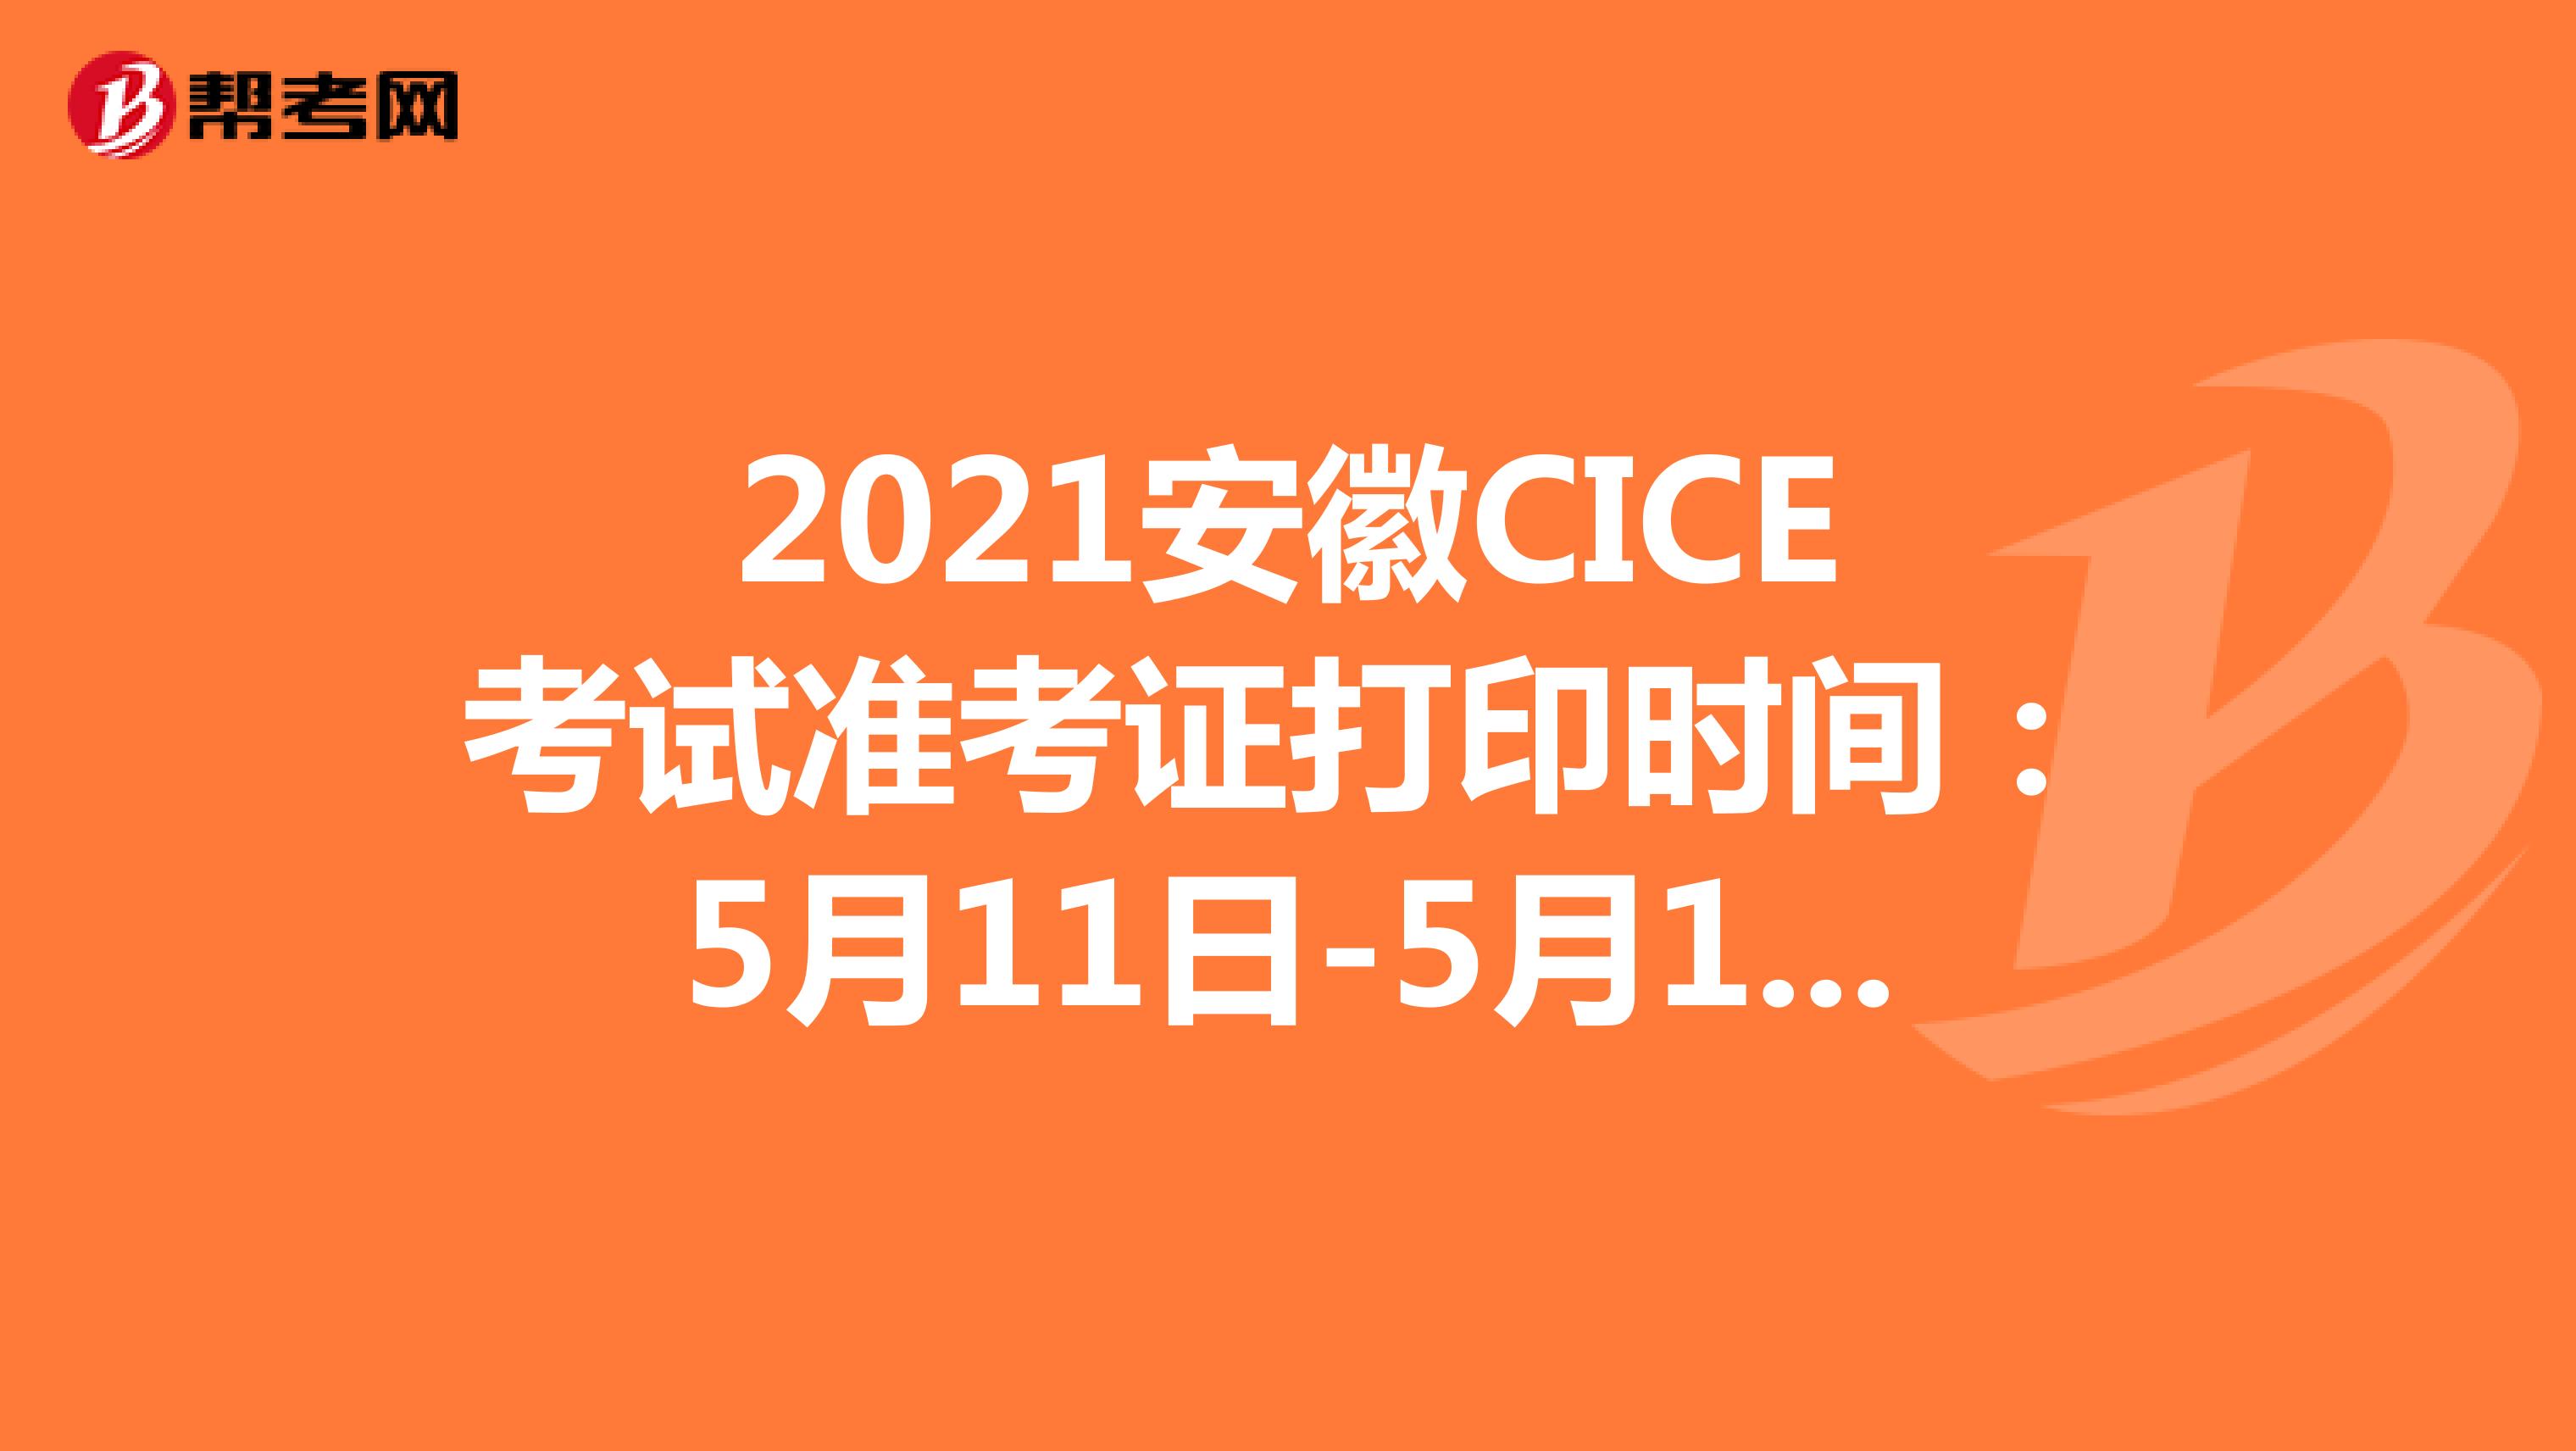 2021安徽CICE考试准考证打印时间：5月11日-5月14日